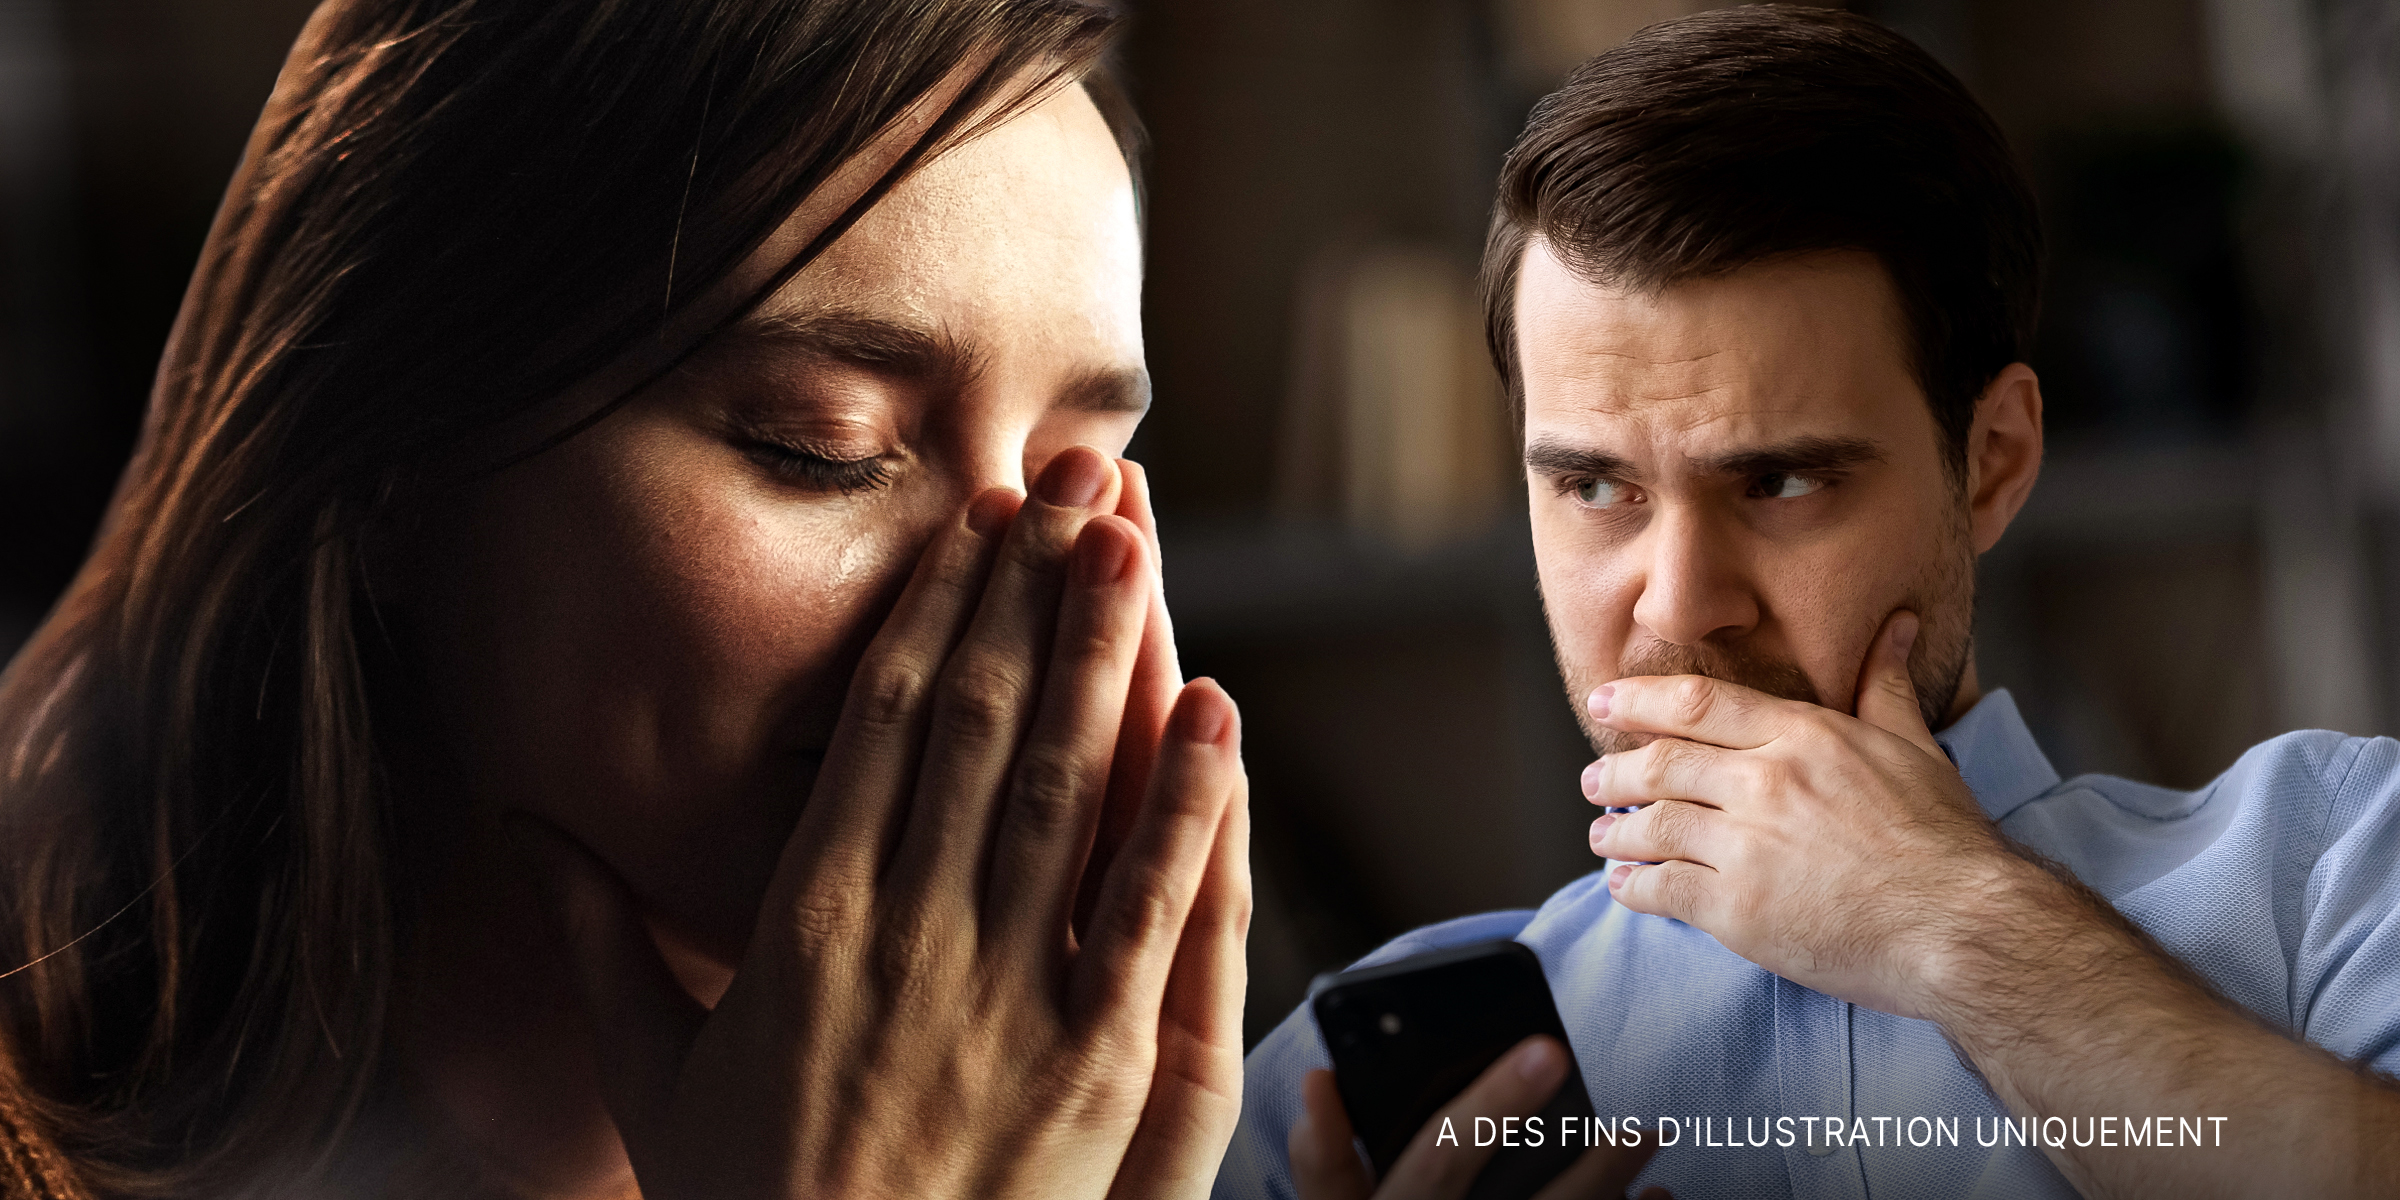 Femme aux yeux remplis de larmes | Homme inquiet | Source : Shutterstock